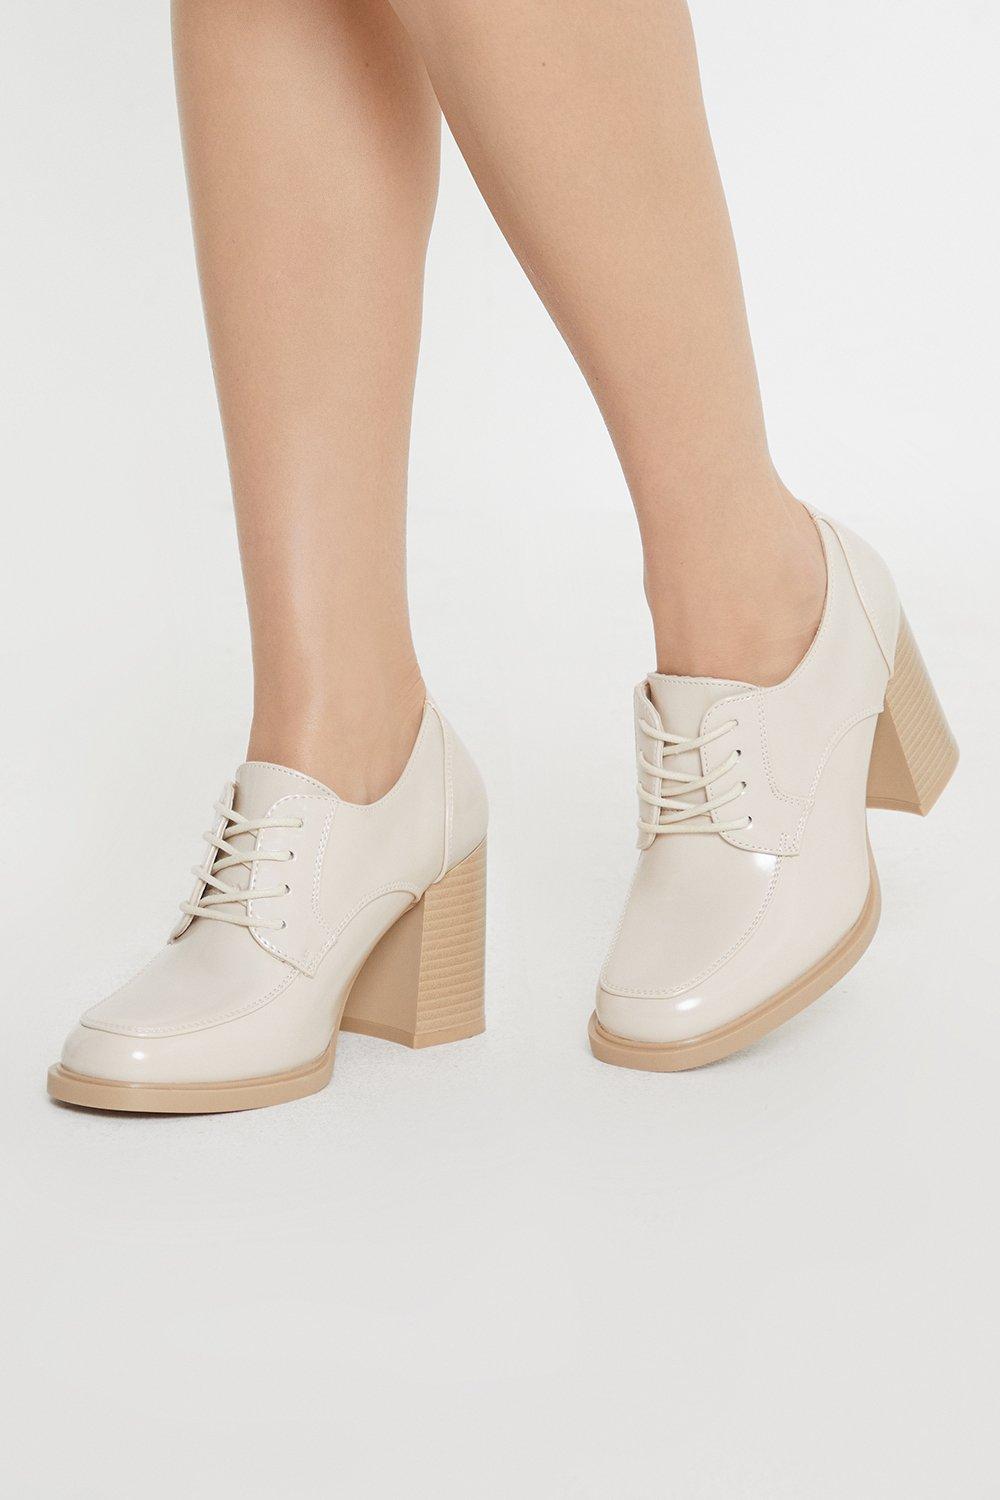 Women’s Principles: Lara Front Lace Up High Block Heel Shoe - beige - 3